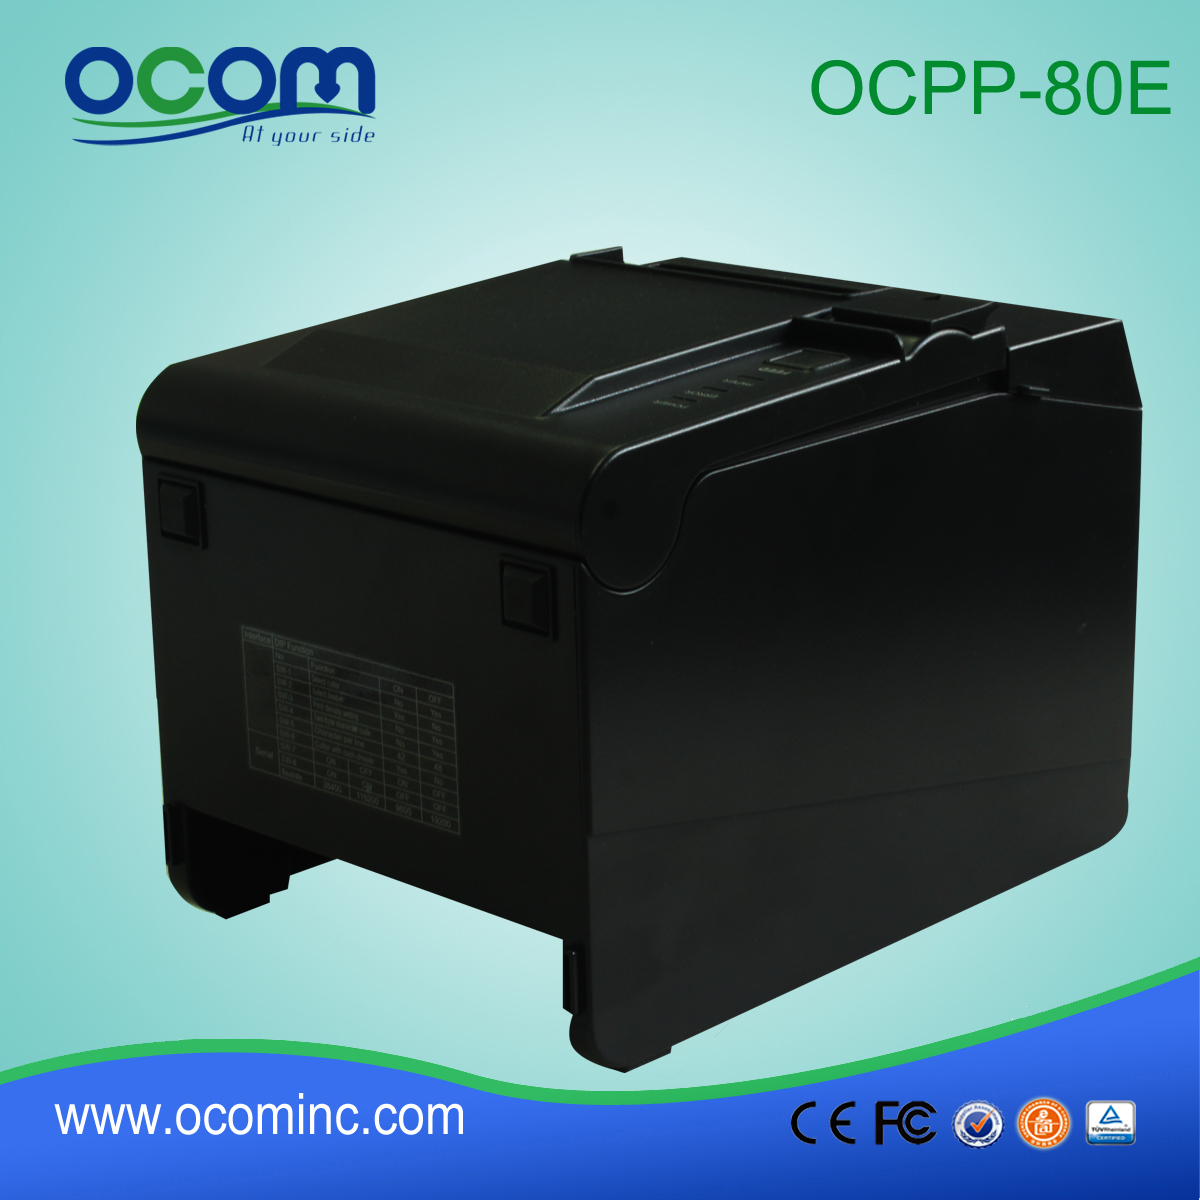 2015 νέα 80 χιλιοστά εκτυπωτή θερμικό χαρτί (OCPP-80E)